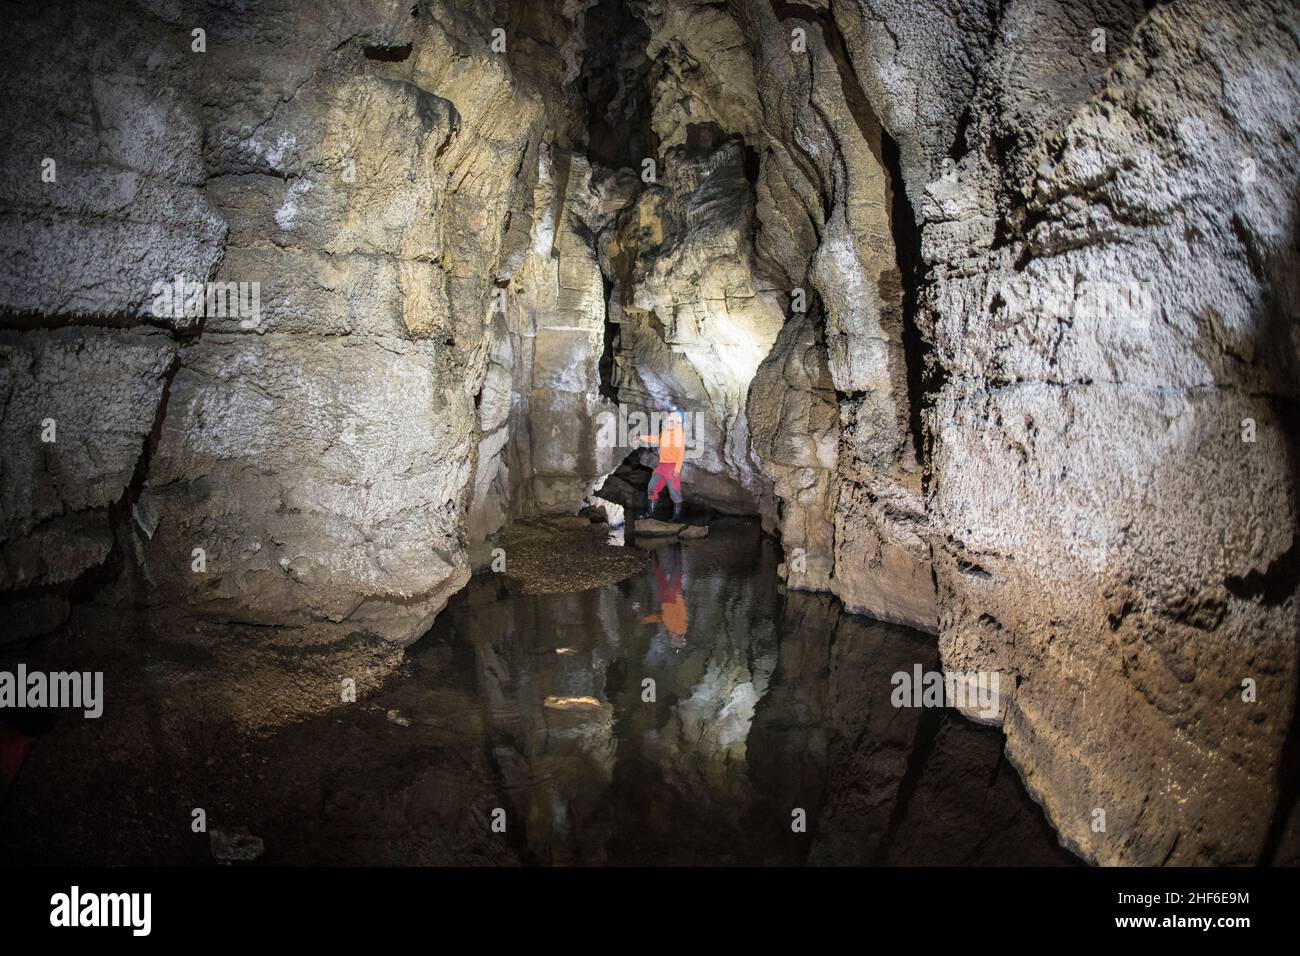 Grotta di stalattiti in Francia, Chateau de la Roche Foto Stock